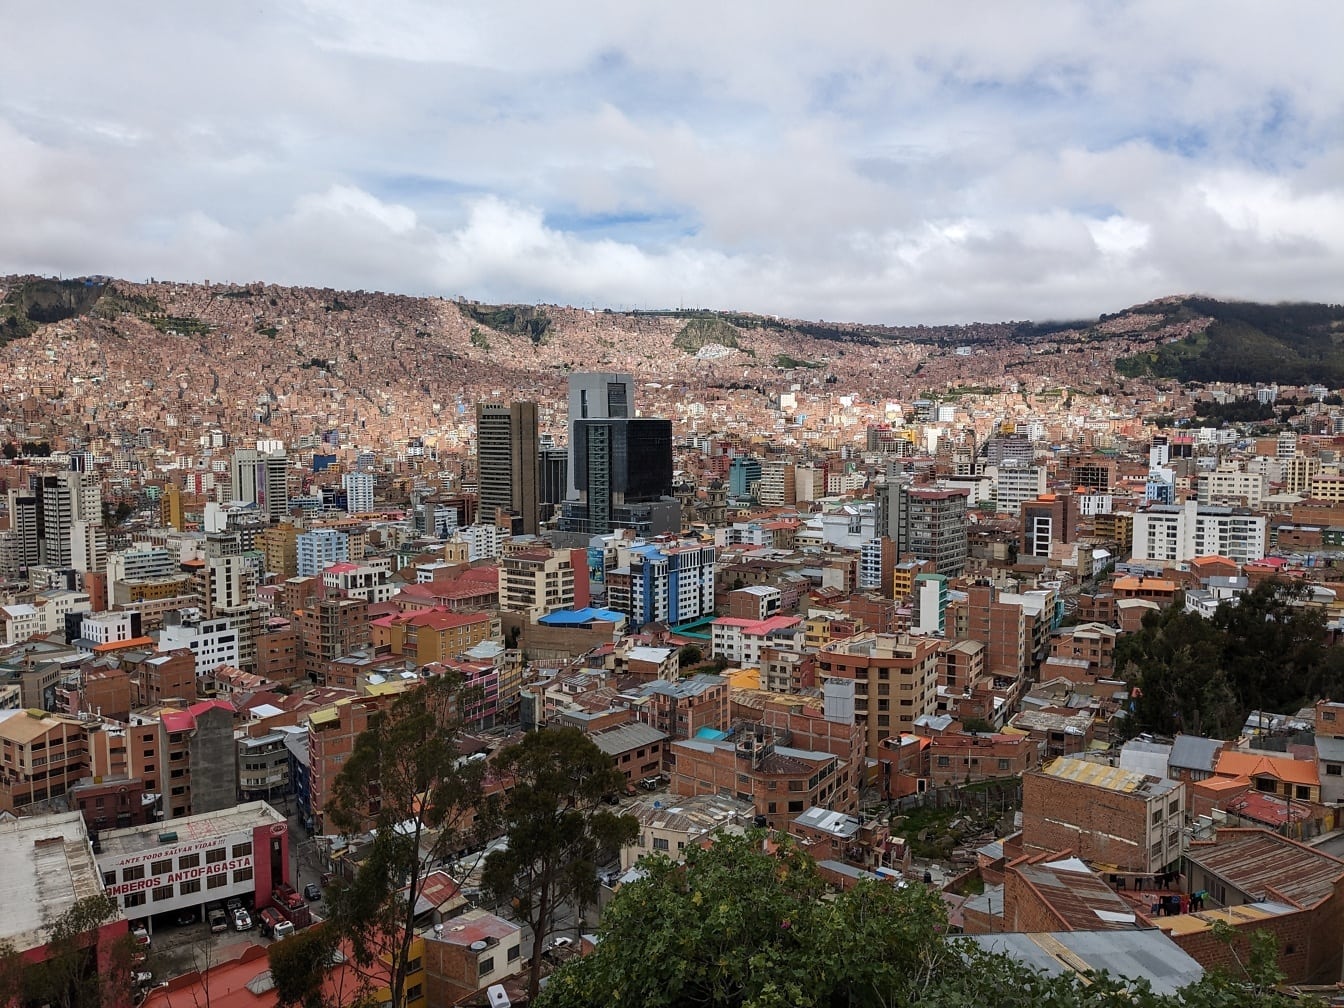 Mirador Killi Killi 的全景城市景观与玻利维亚的拉巴斯市有许多建筑物